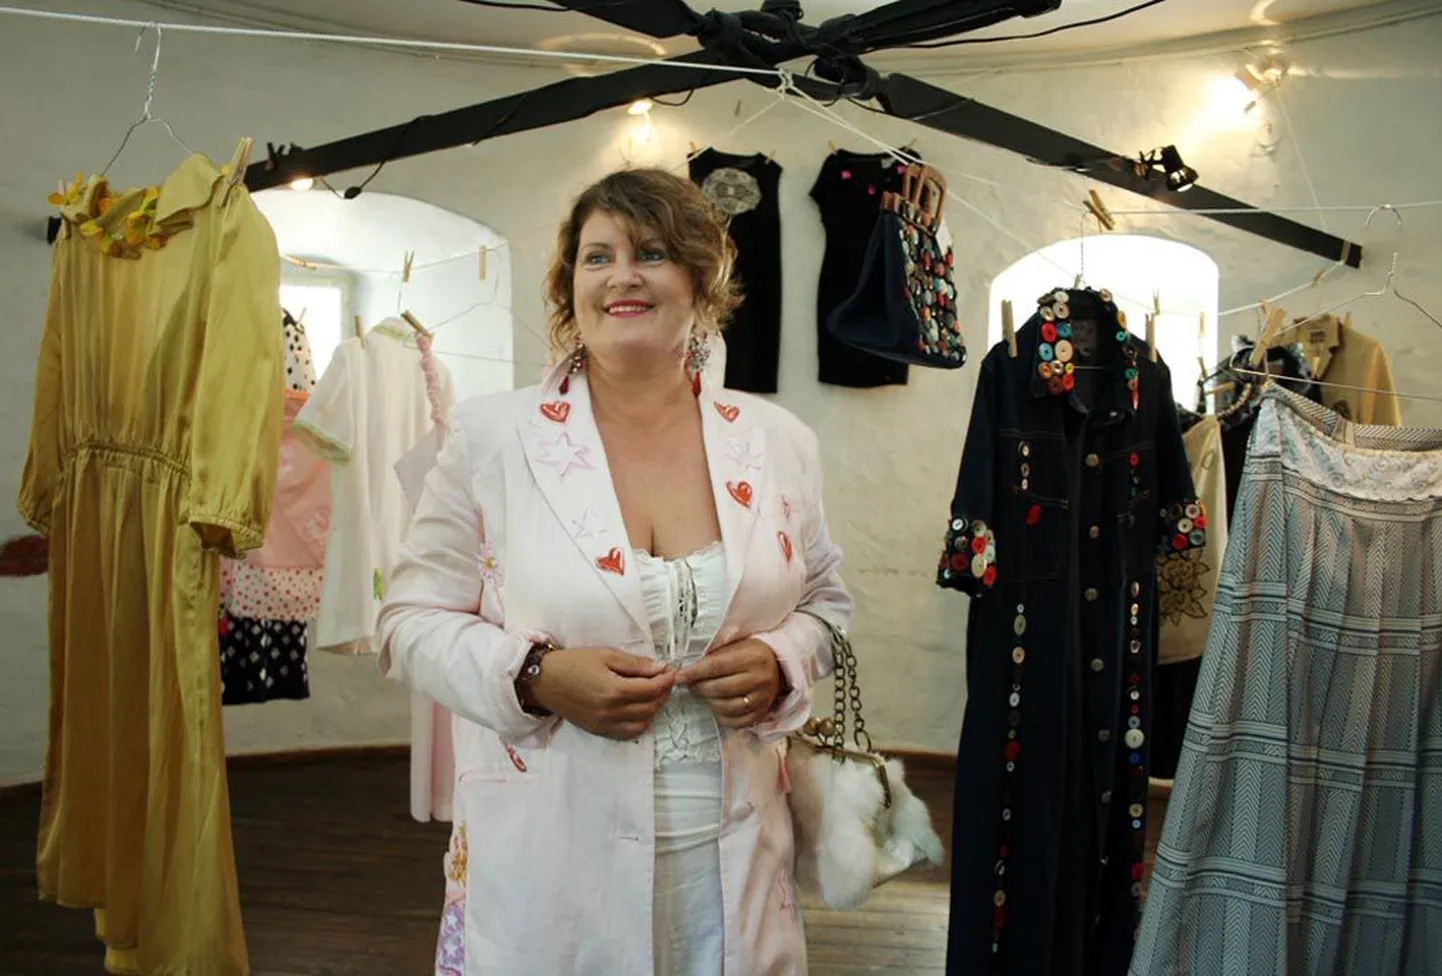 Väljas on seelikud, pluusid, jakid ja kleidid, jalanõud ning käekotid, kokku üle 20 eseme, loetles Endla Murd. Näituse kuraator on sisekujundaja Marit Murd.